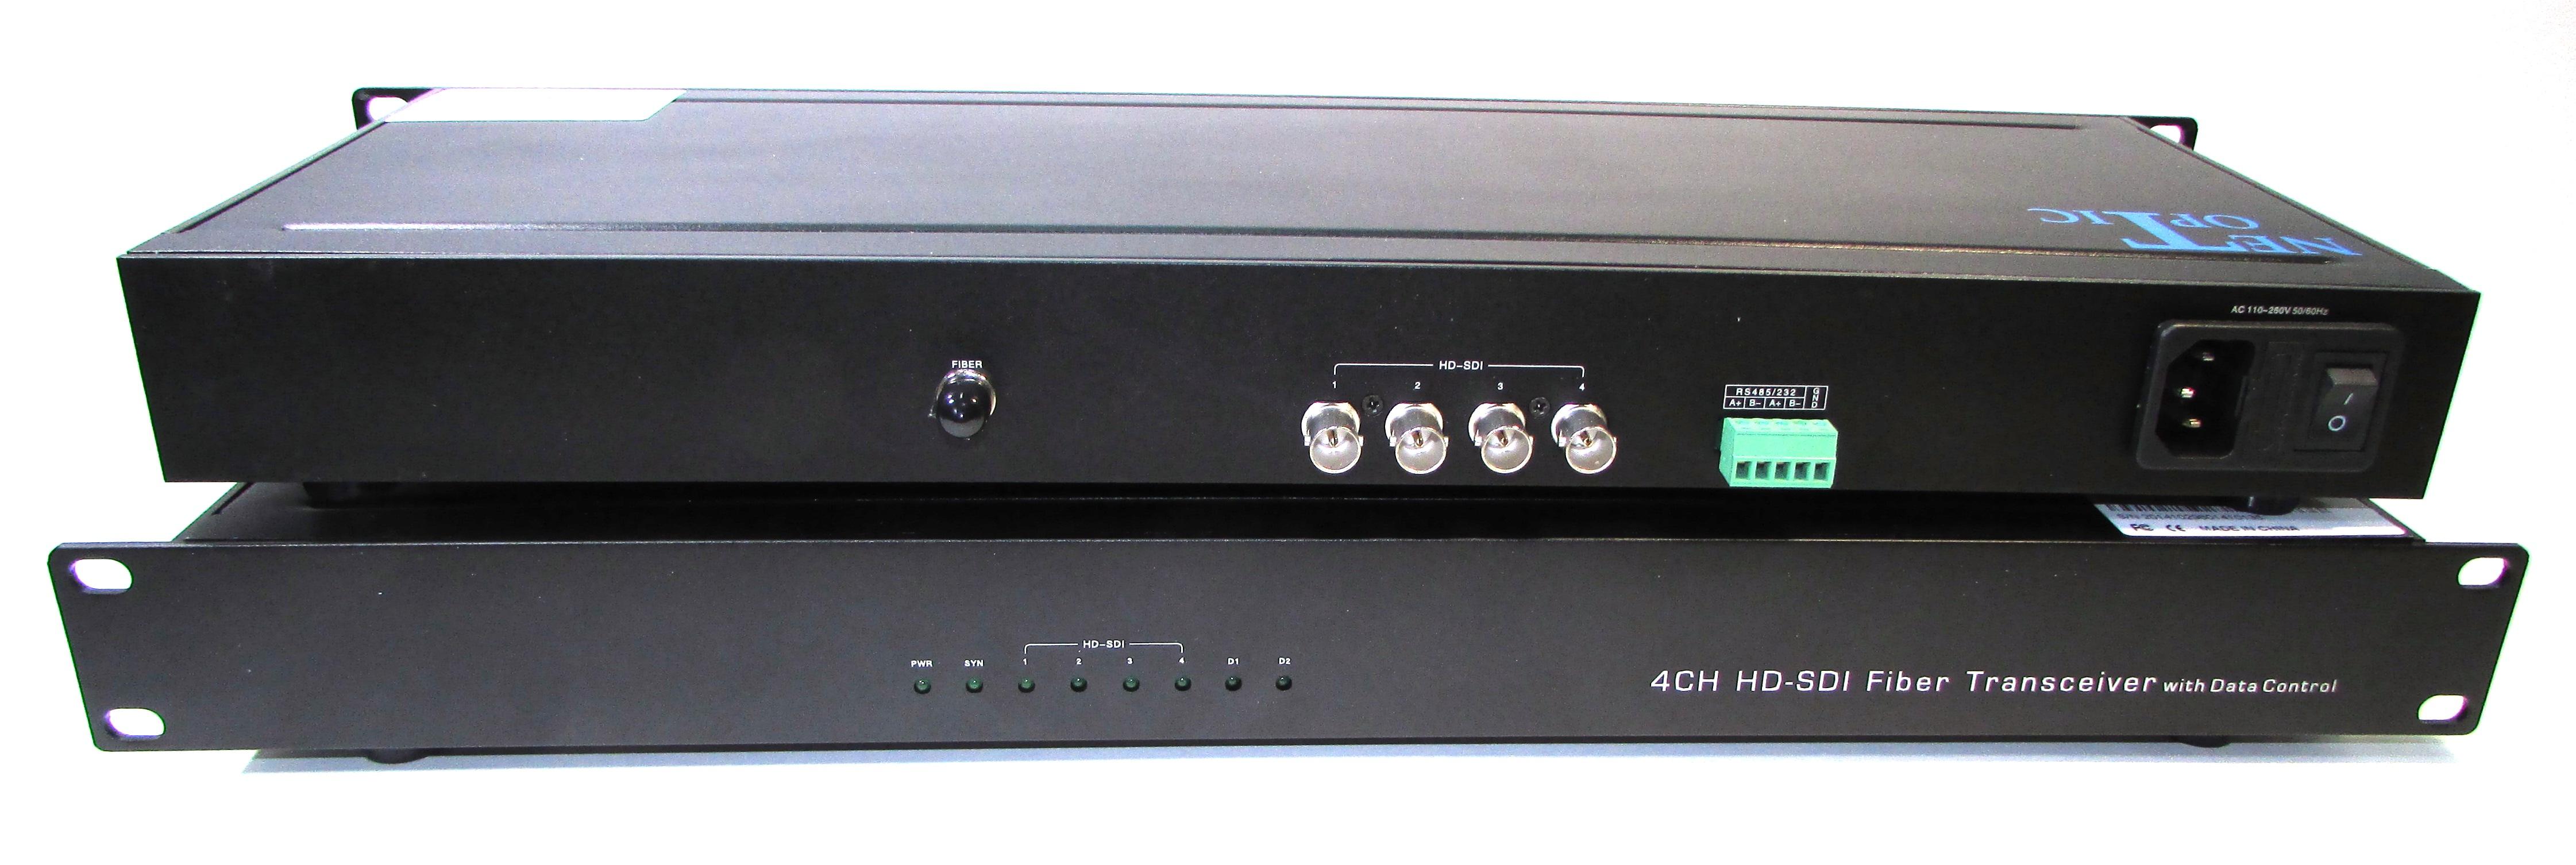 Комплект для передачи 4 сигналов SD/HD-SDI, NO-4xHD-SDI-20